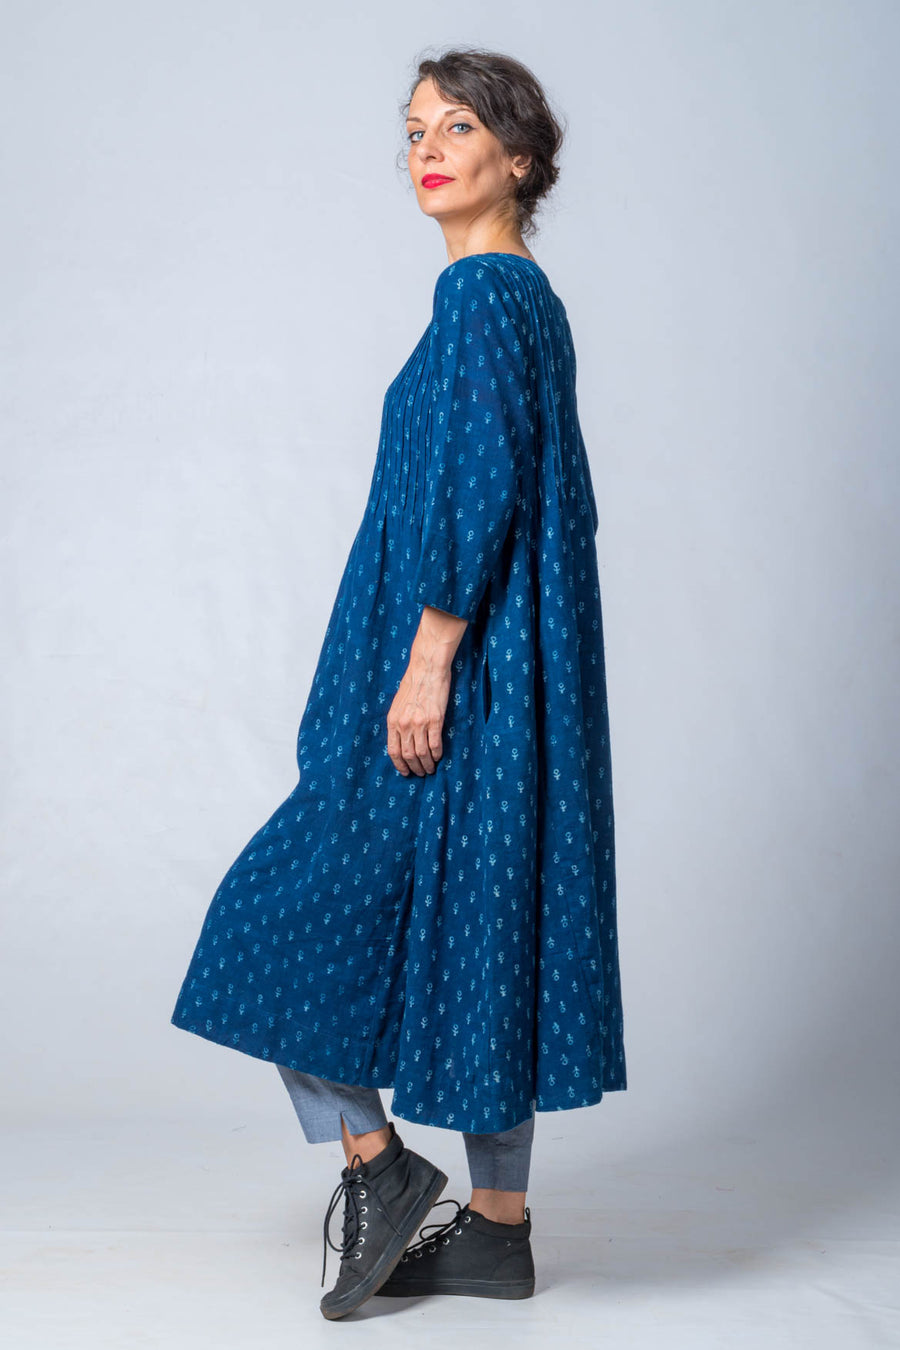 Pure Indigo Block printed Dress in Khadi- UDUPU